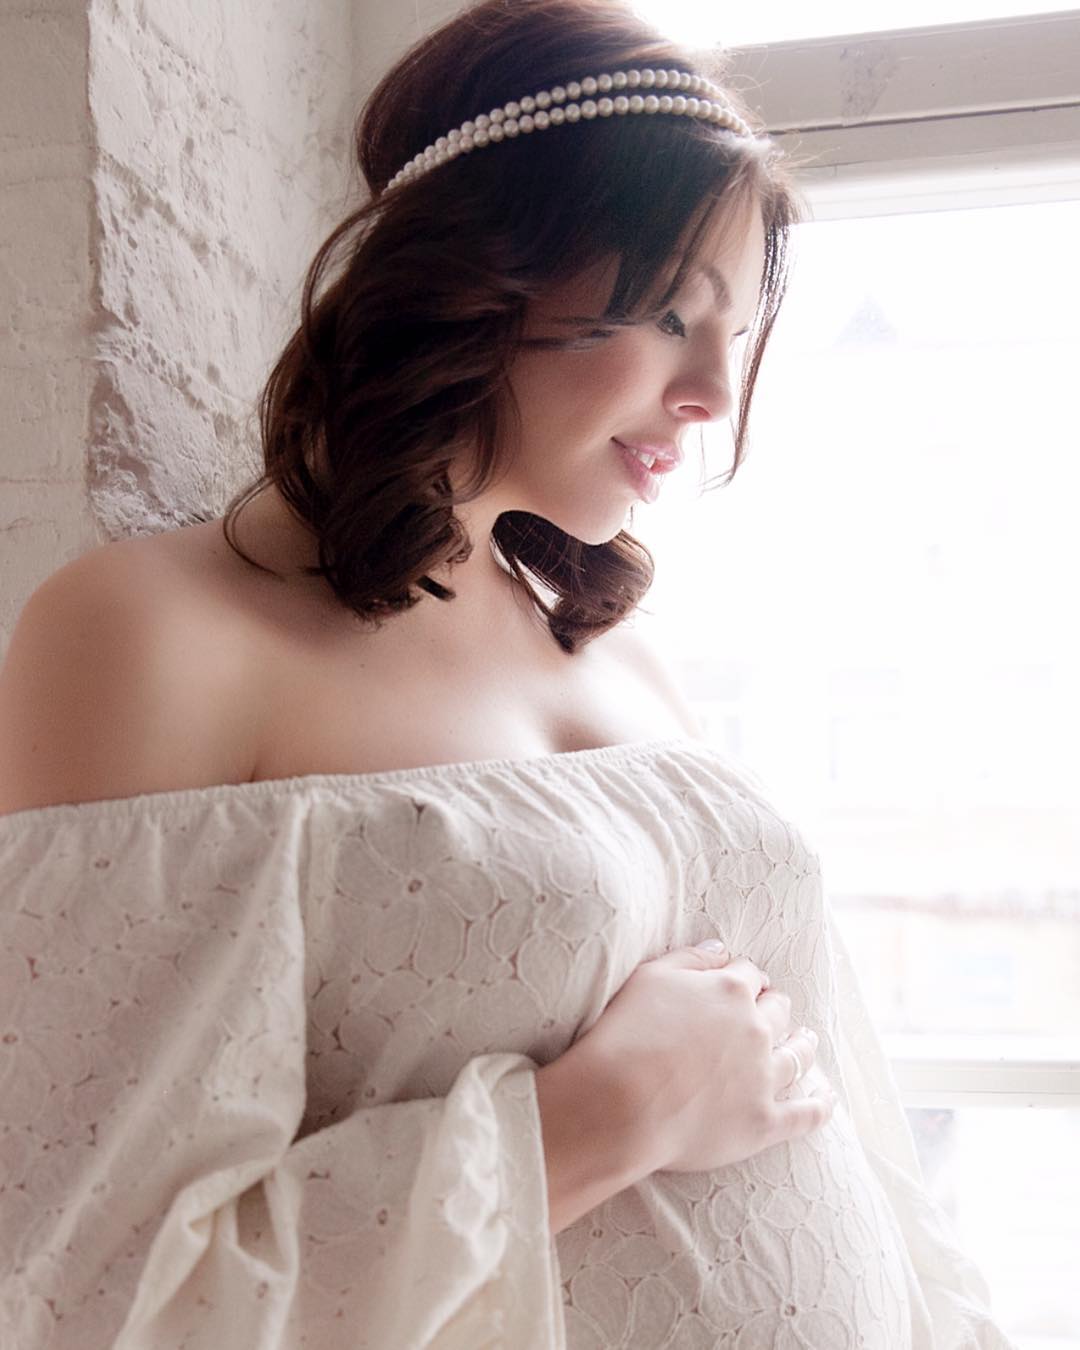 Беременная на последних месяцах Анастасия Стоцкая снялась в нежной фотосессии в вышиванке